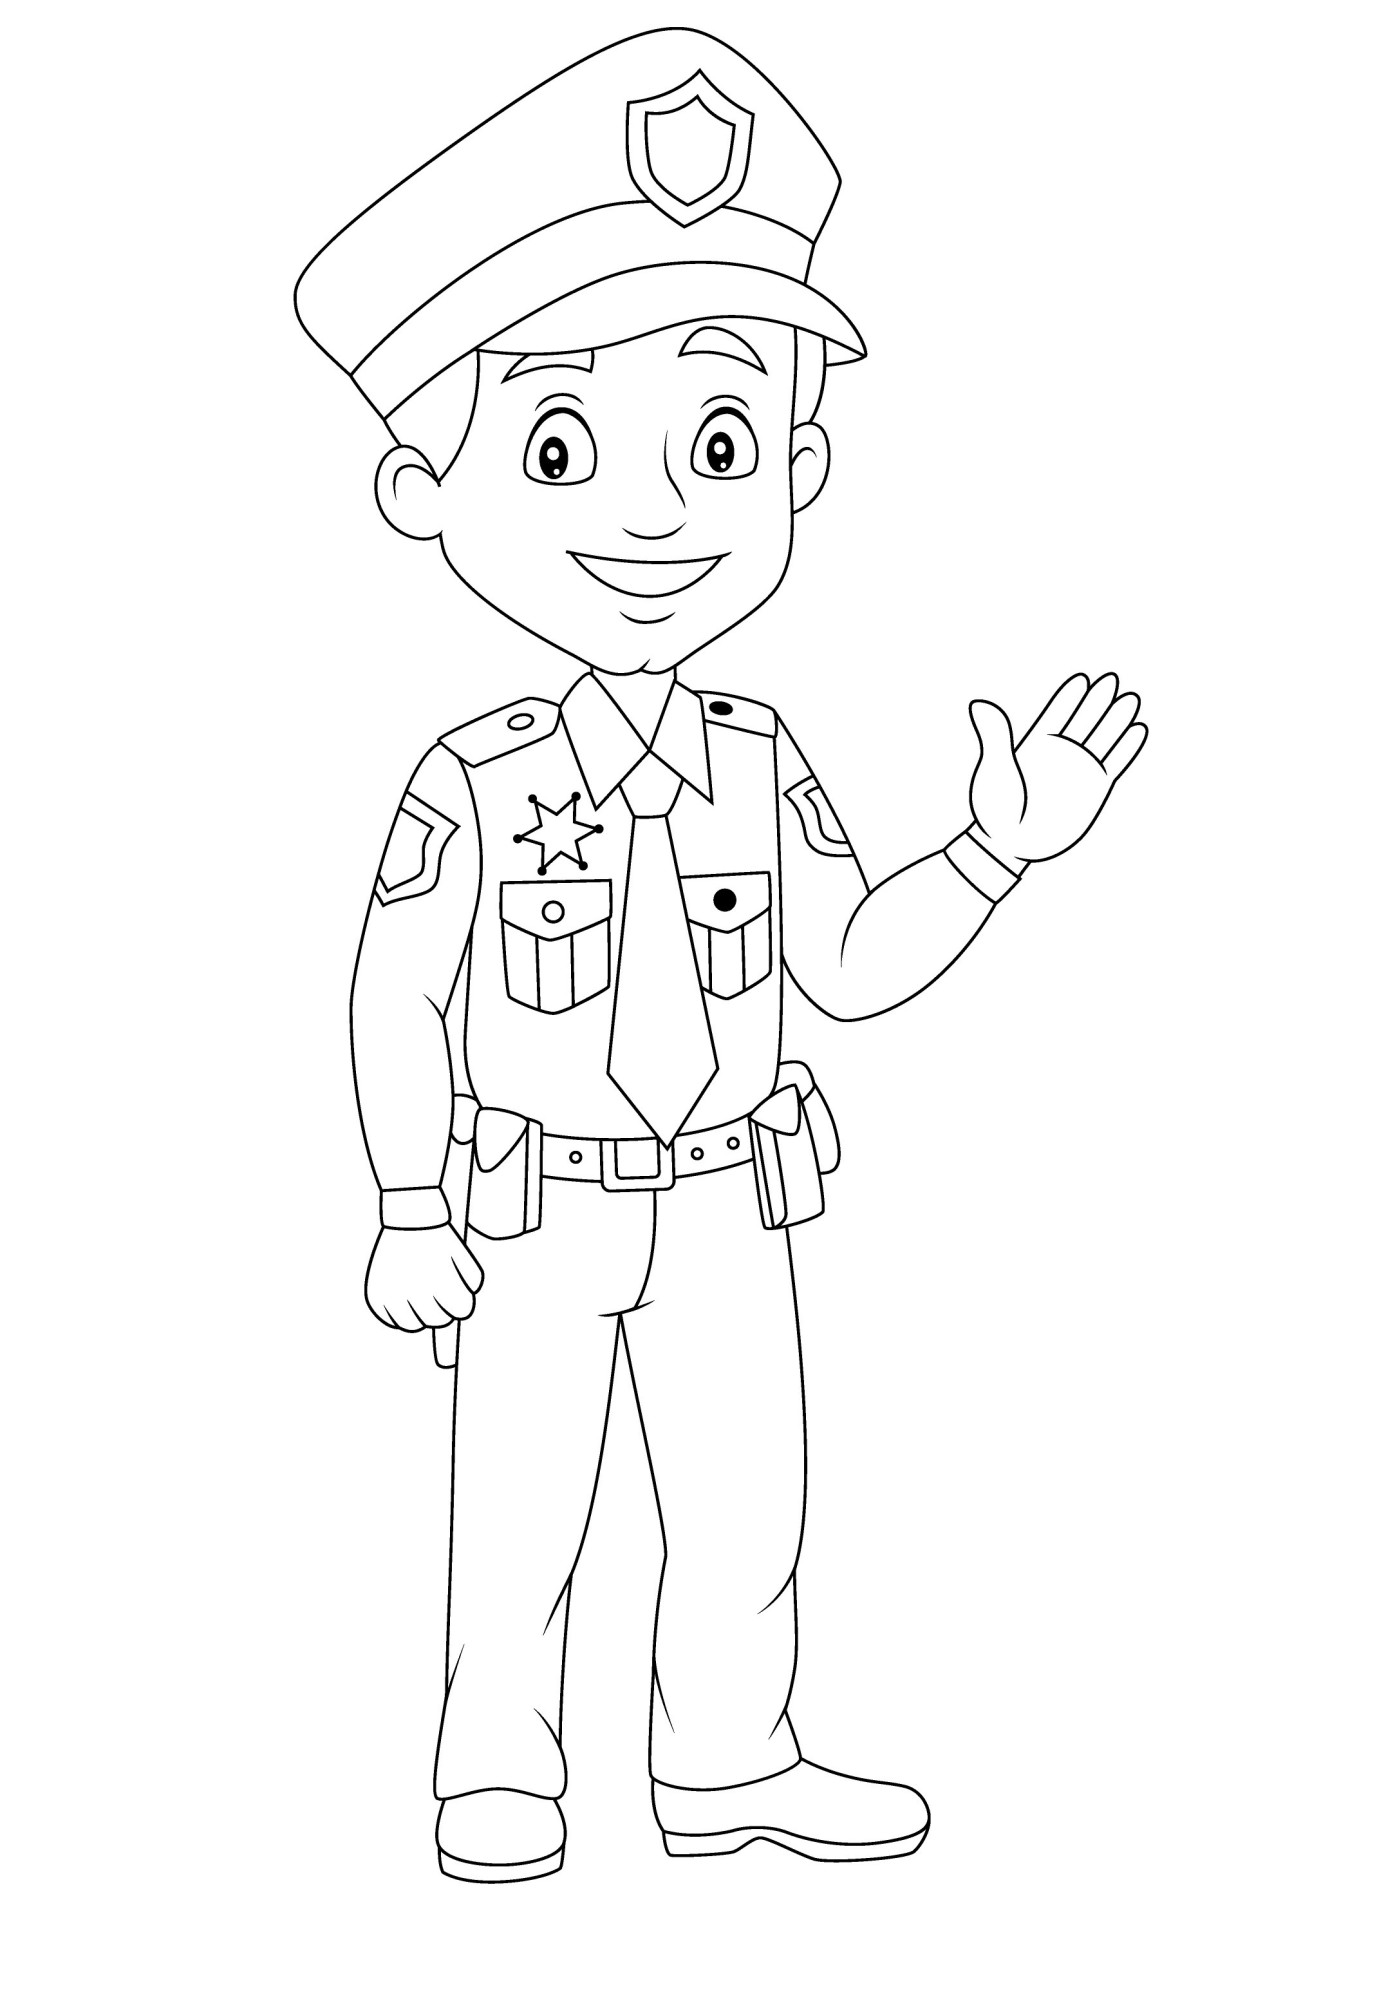 Раскраска для детей: полицейский в форме